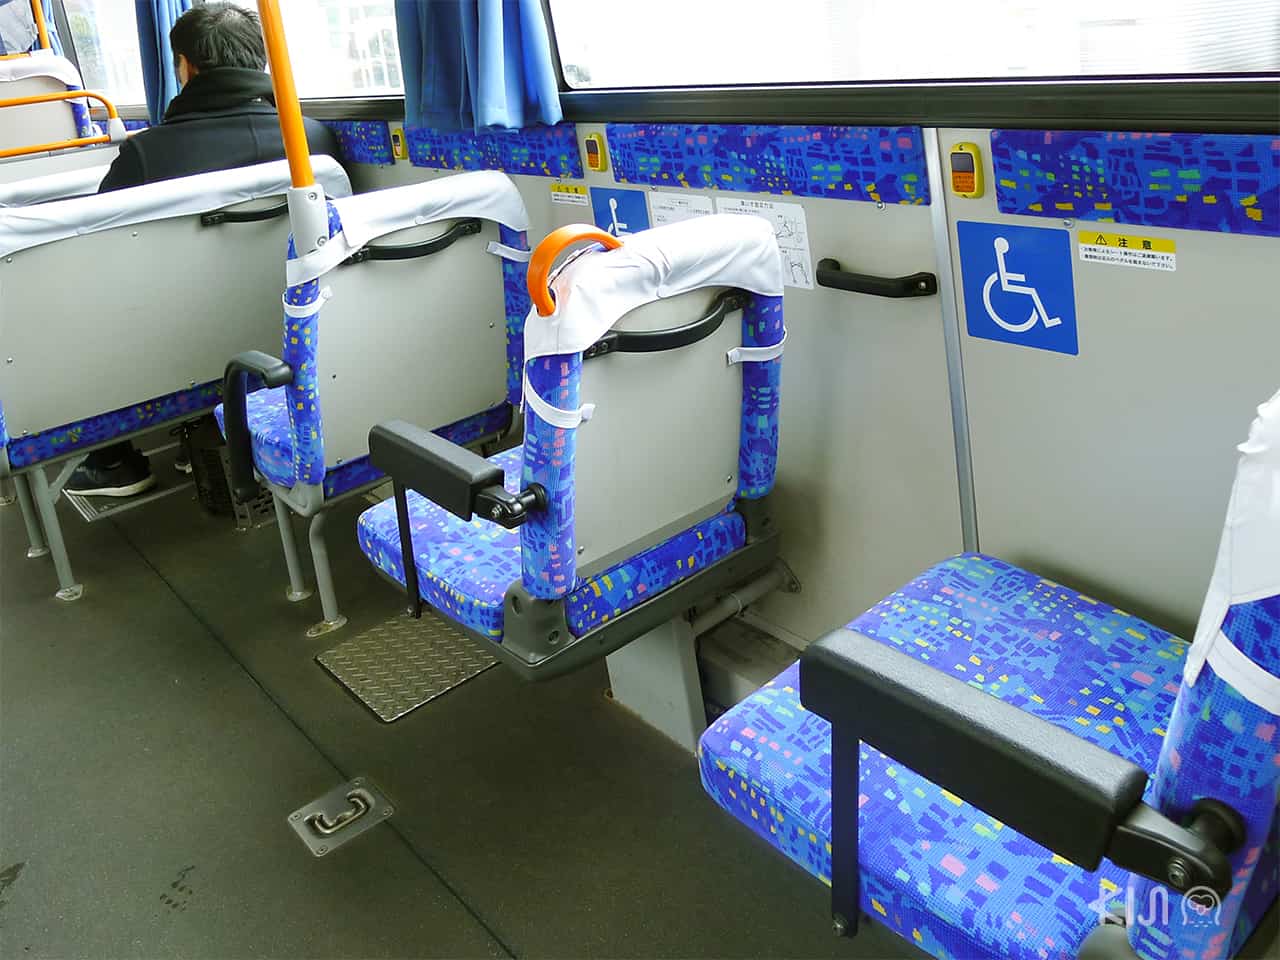 Bus in Japan